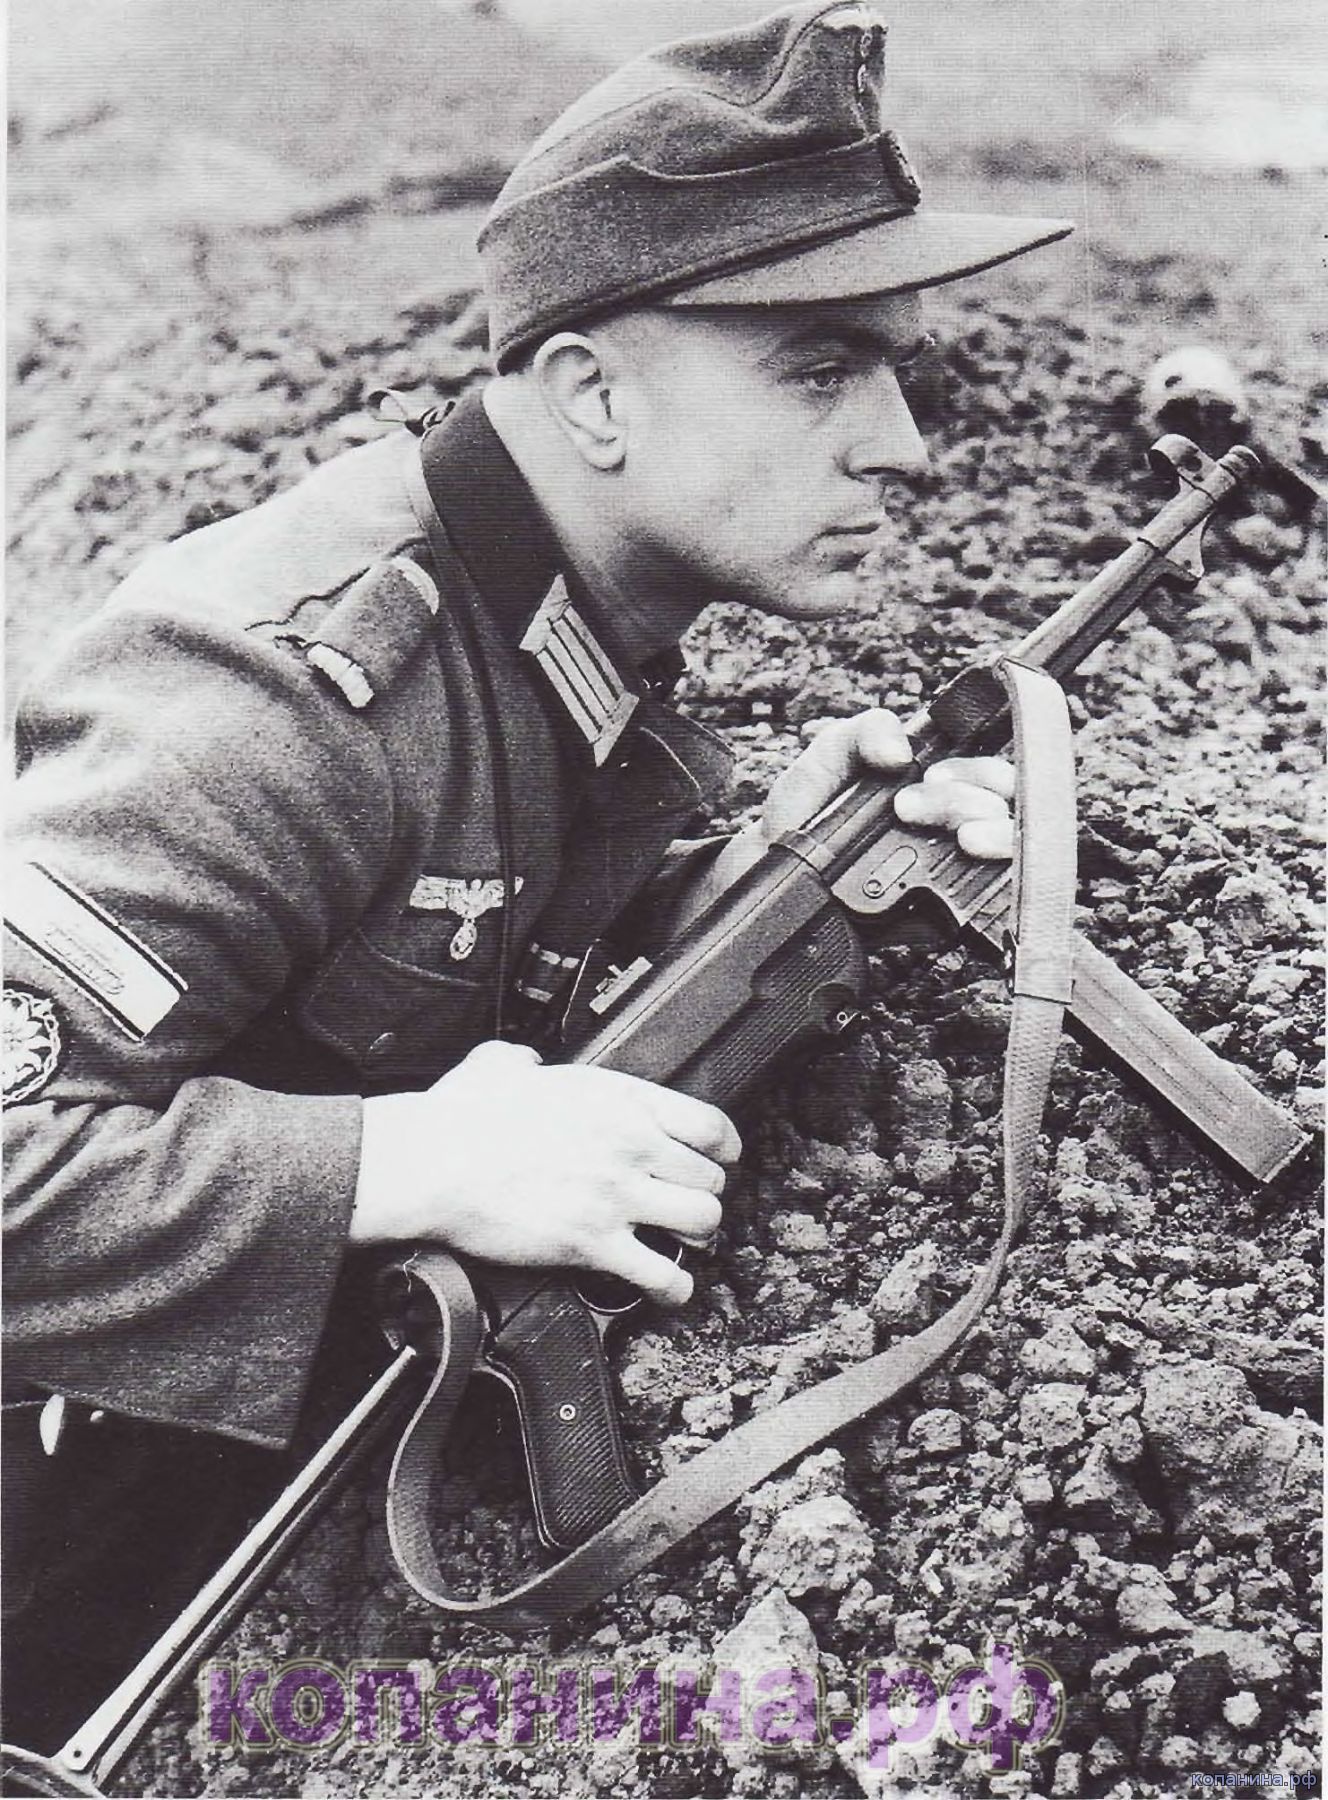 Автомат шмайсер фото немецкий второй мировой войны